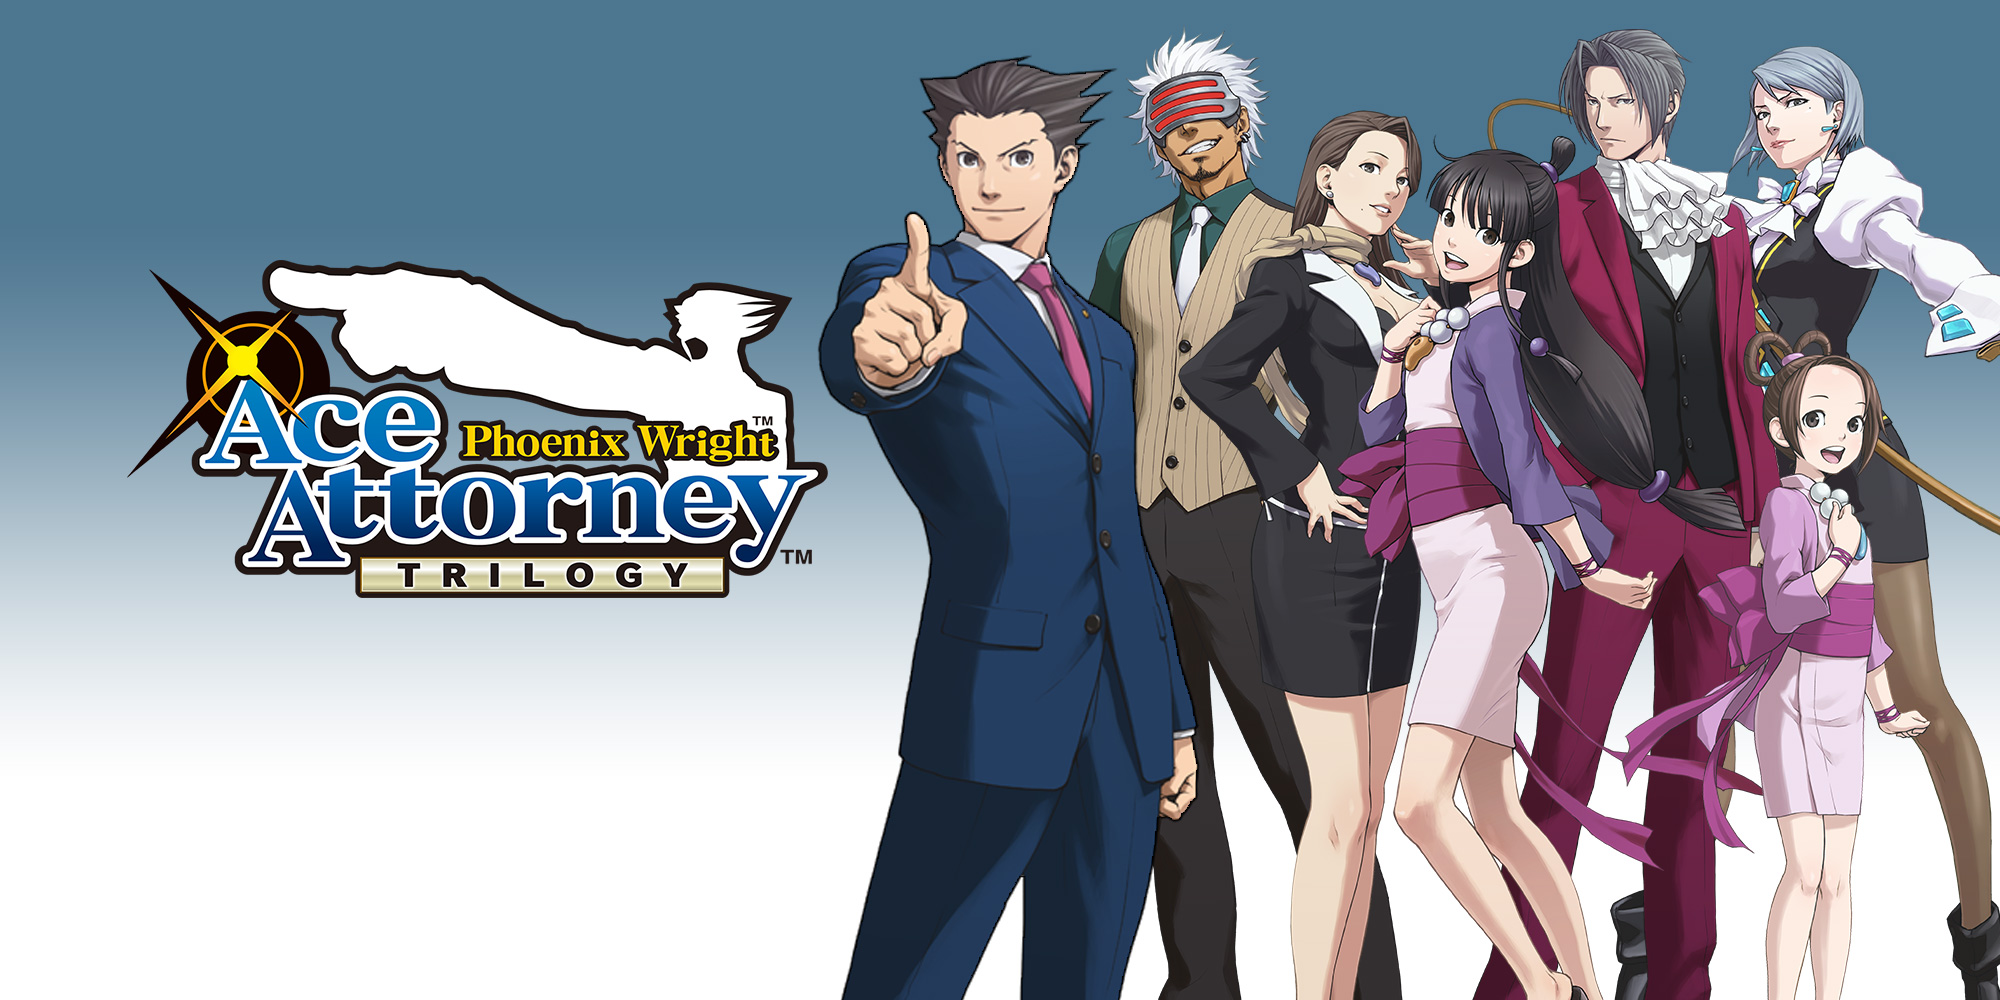 3DS] Phoenix Wright: Ace Attorney Trilogy - Traduzido e Dublado v3.0  (Jacutem Sabão) - João13